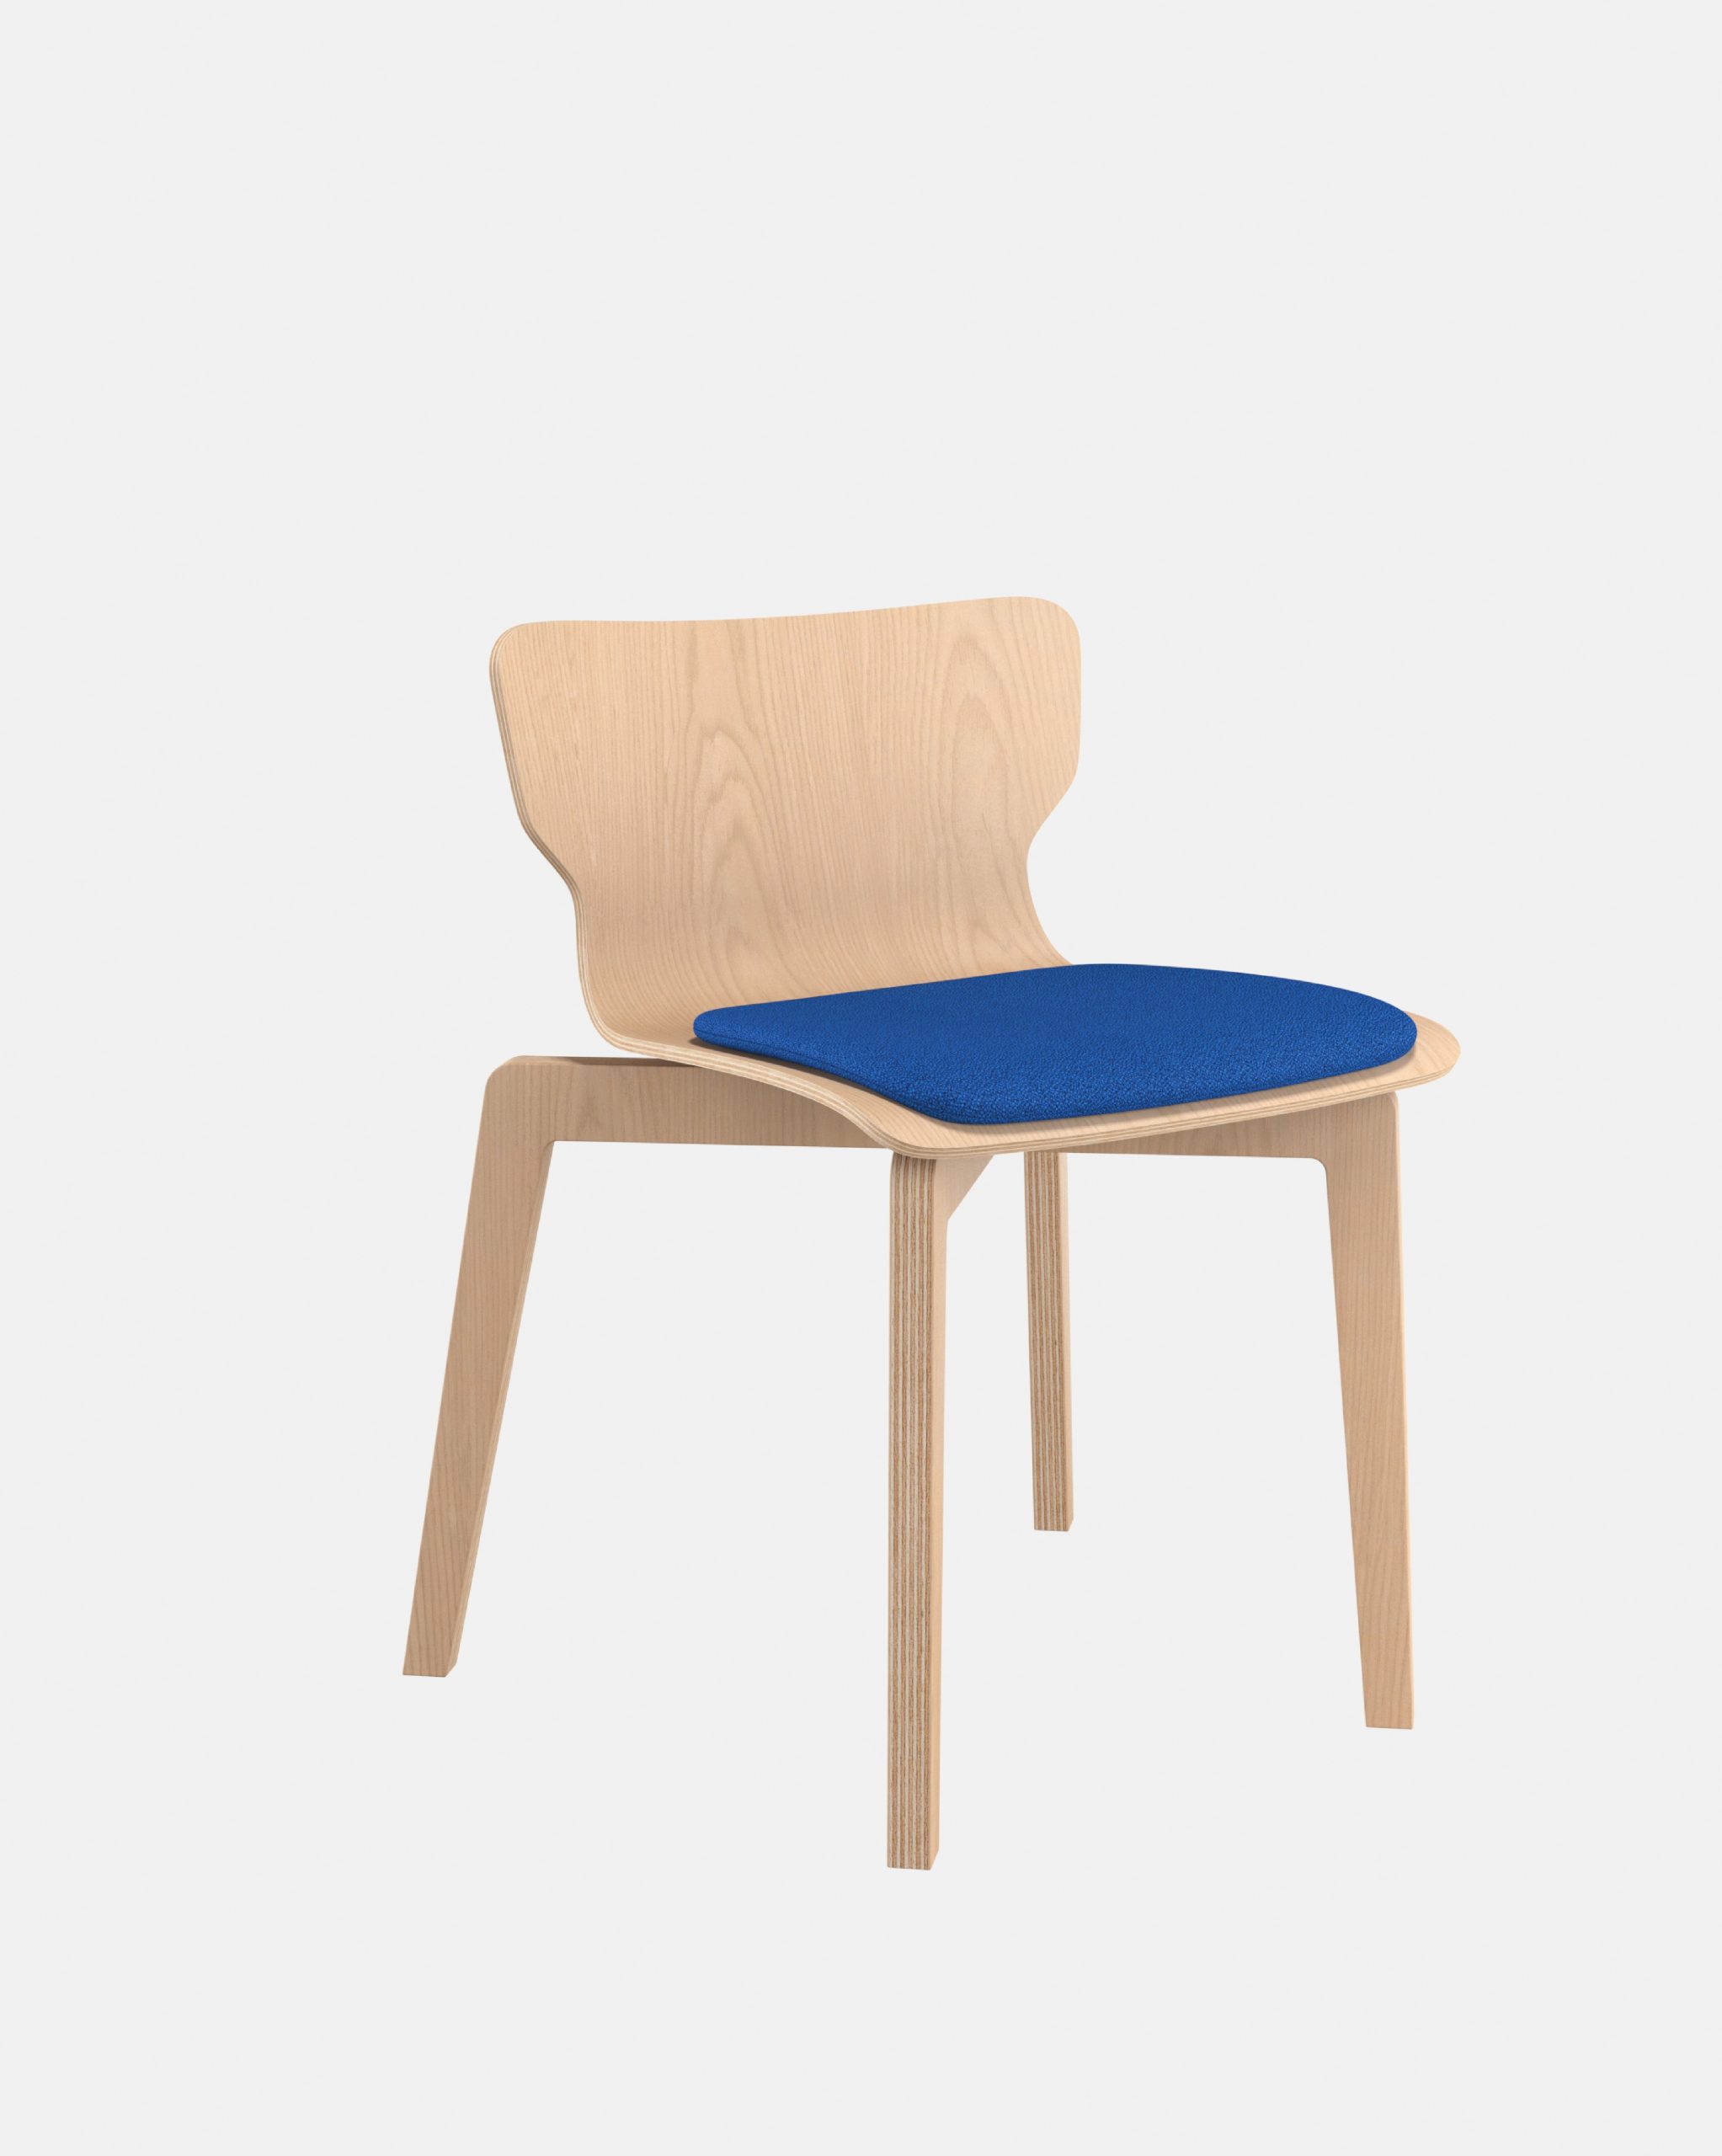 Chaise empilable, chaise en bois français naturel, éco conception